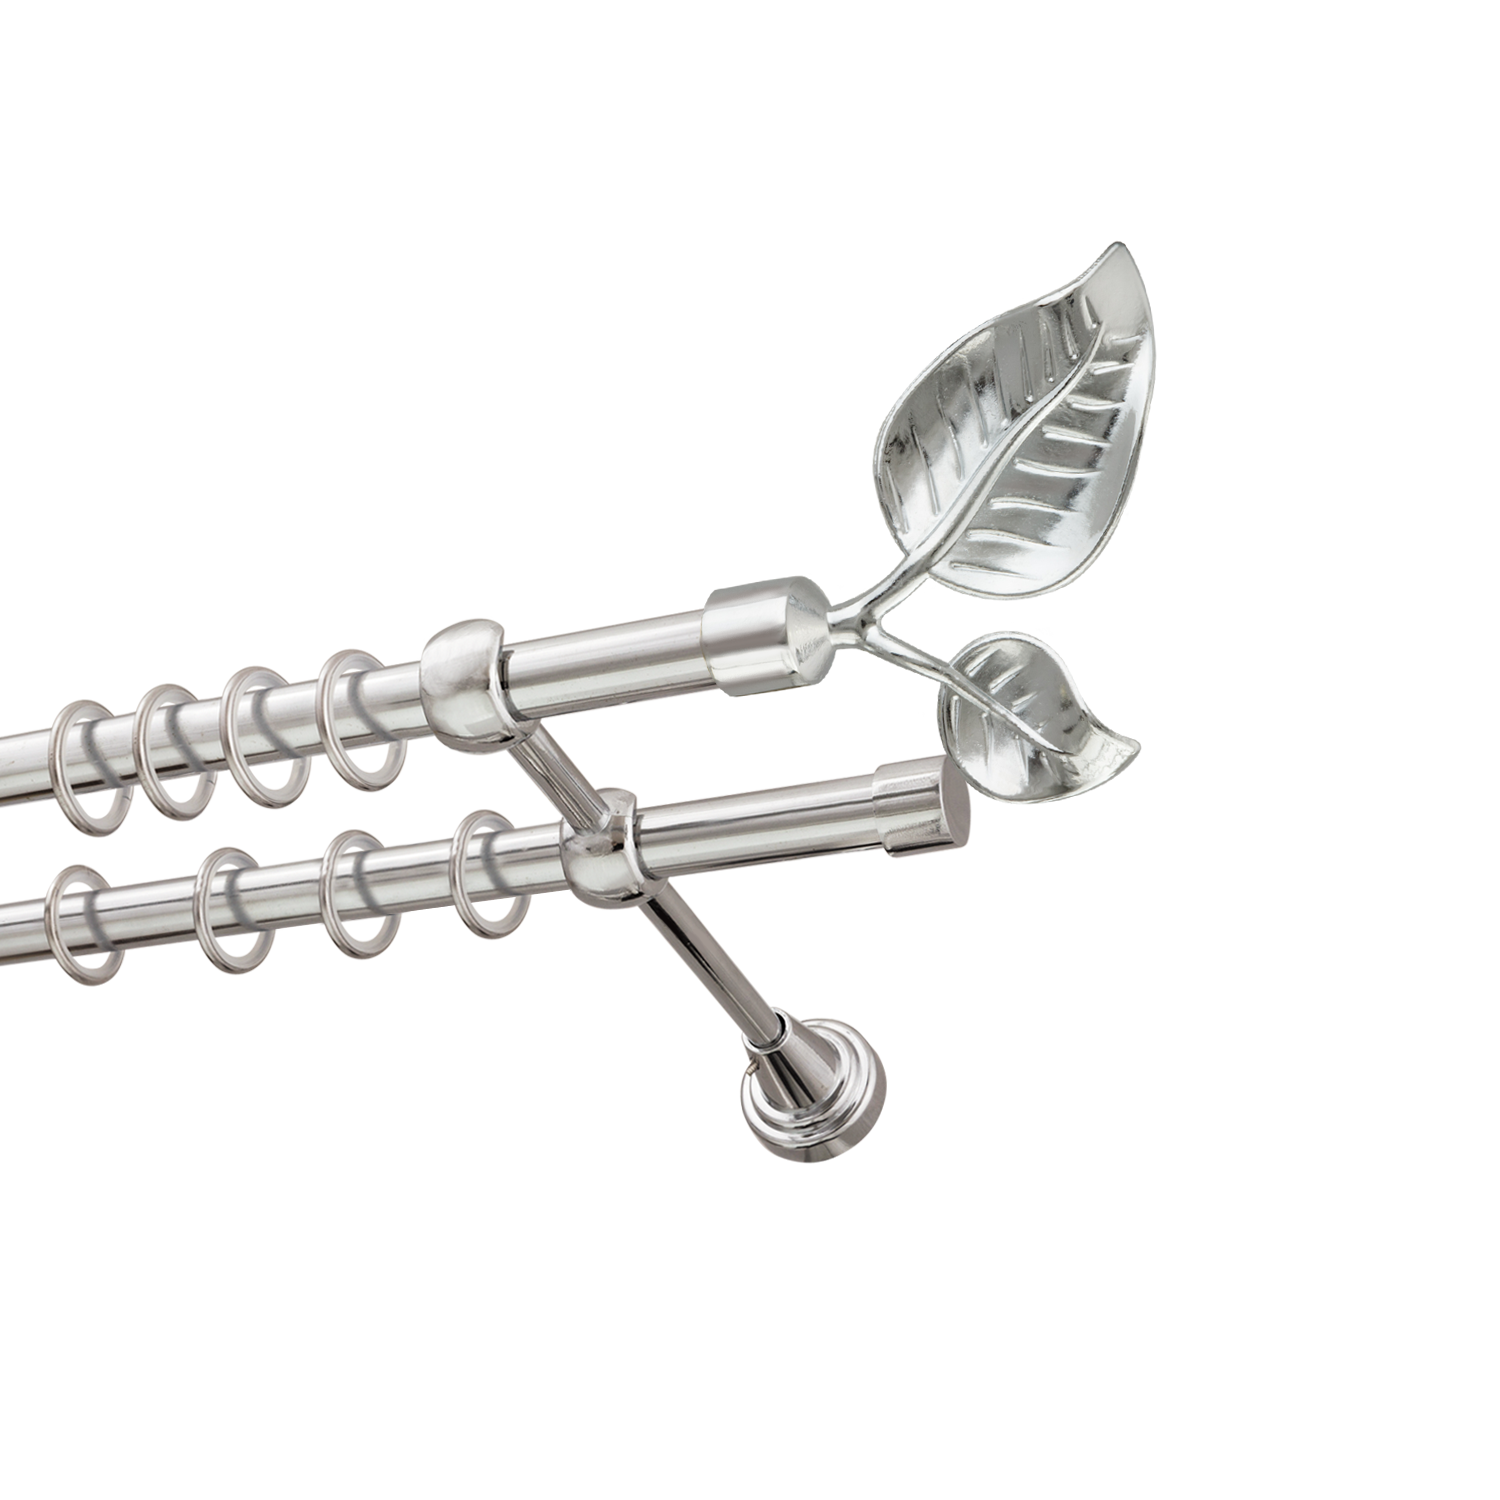 Металлический карниз для штор Тропик, двухрядный 16/16 мм, серебро, гладкая штанга, длина 160 см - фото Wikidecor.ru